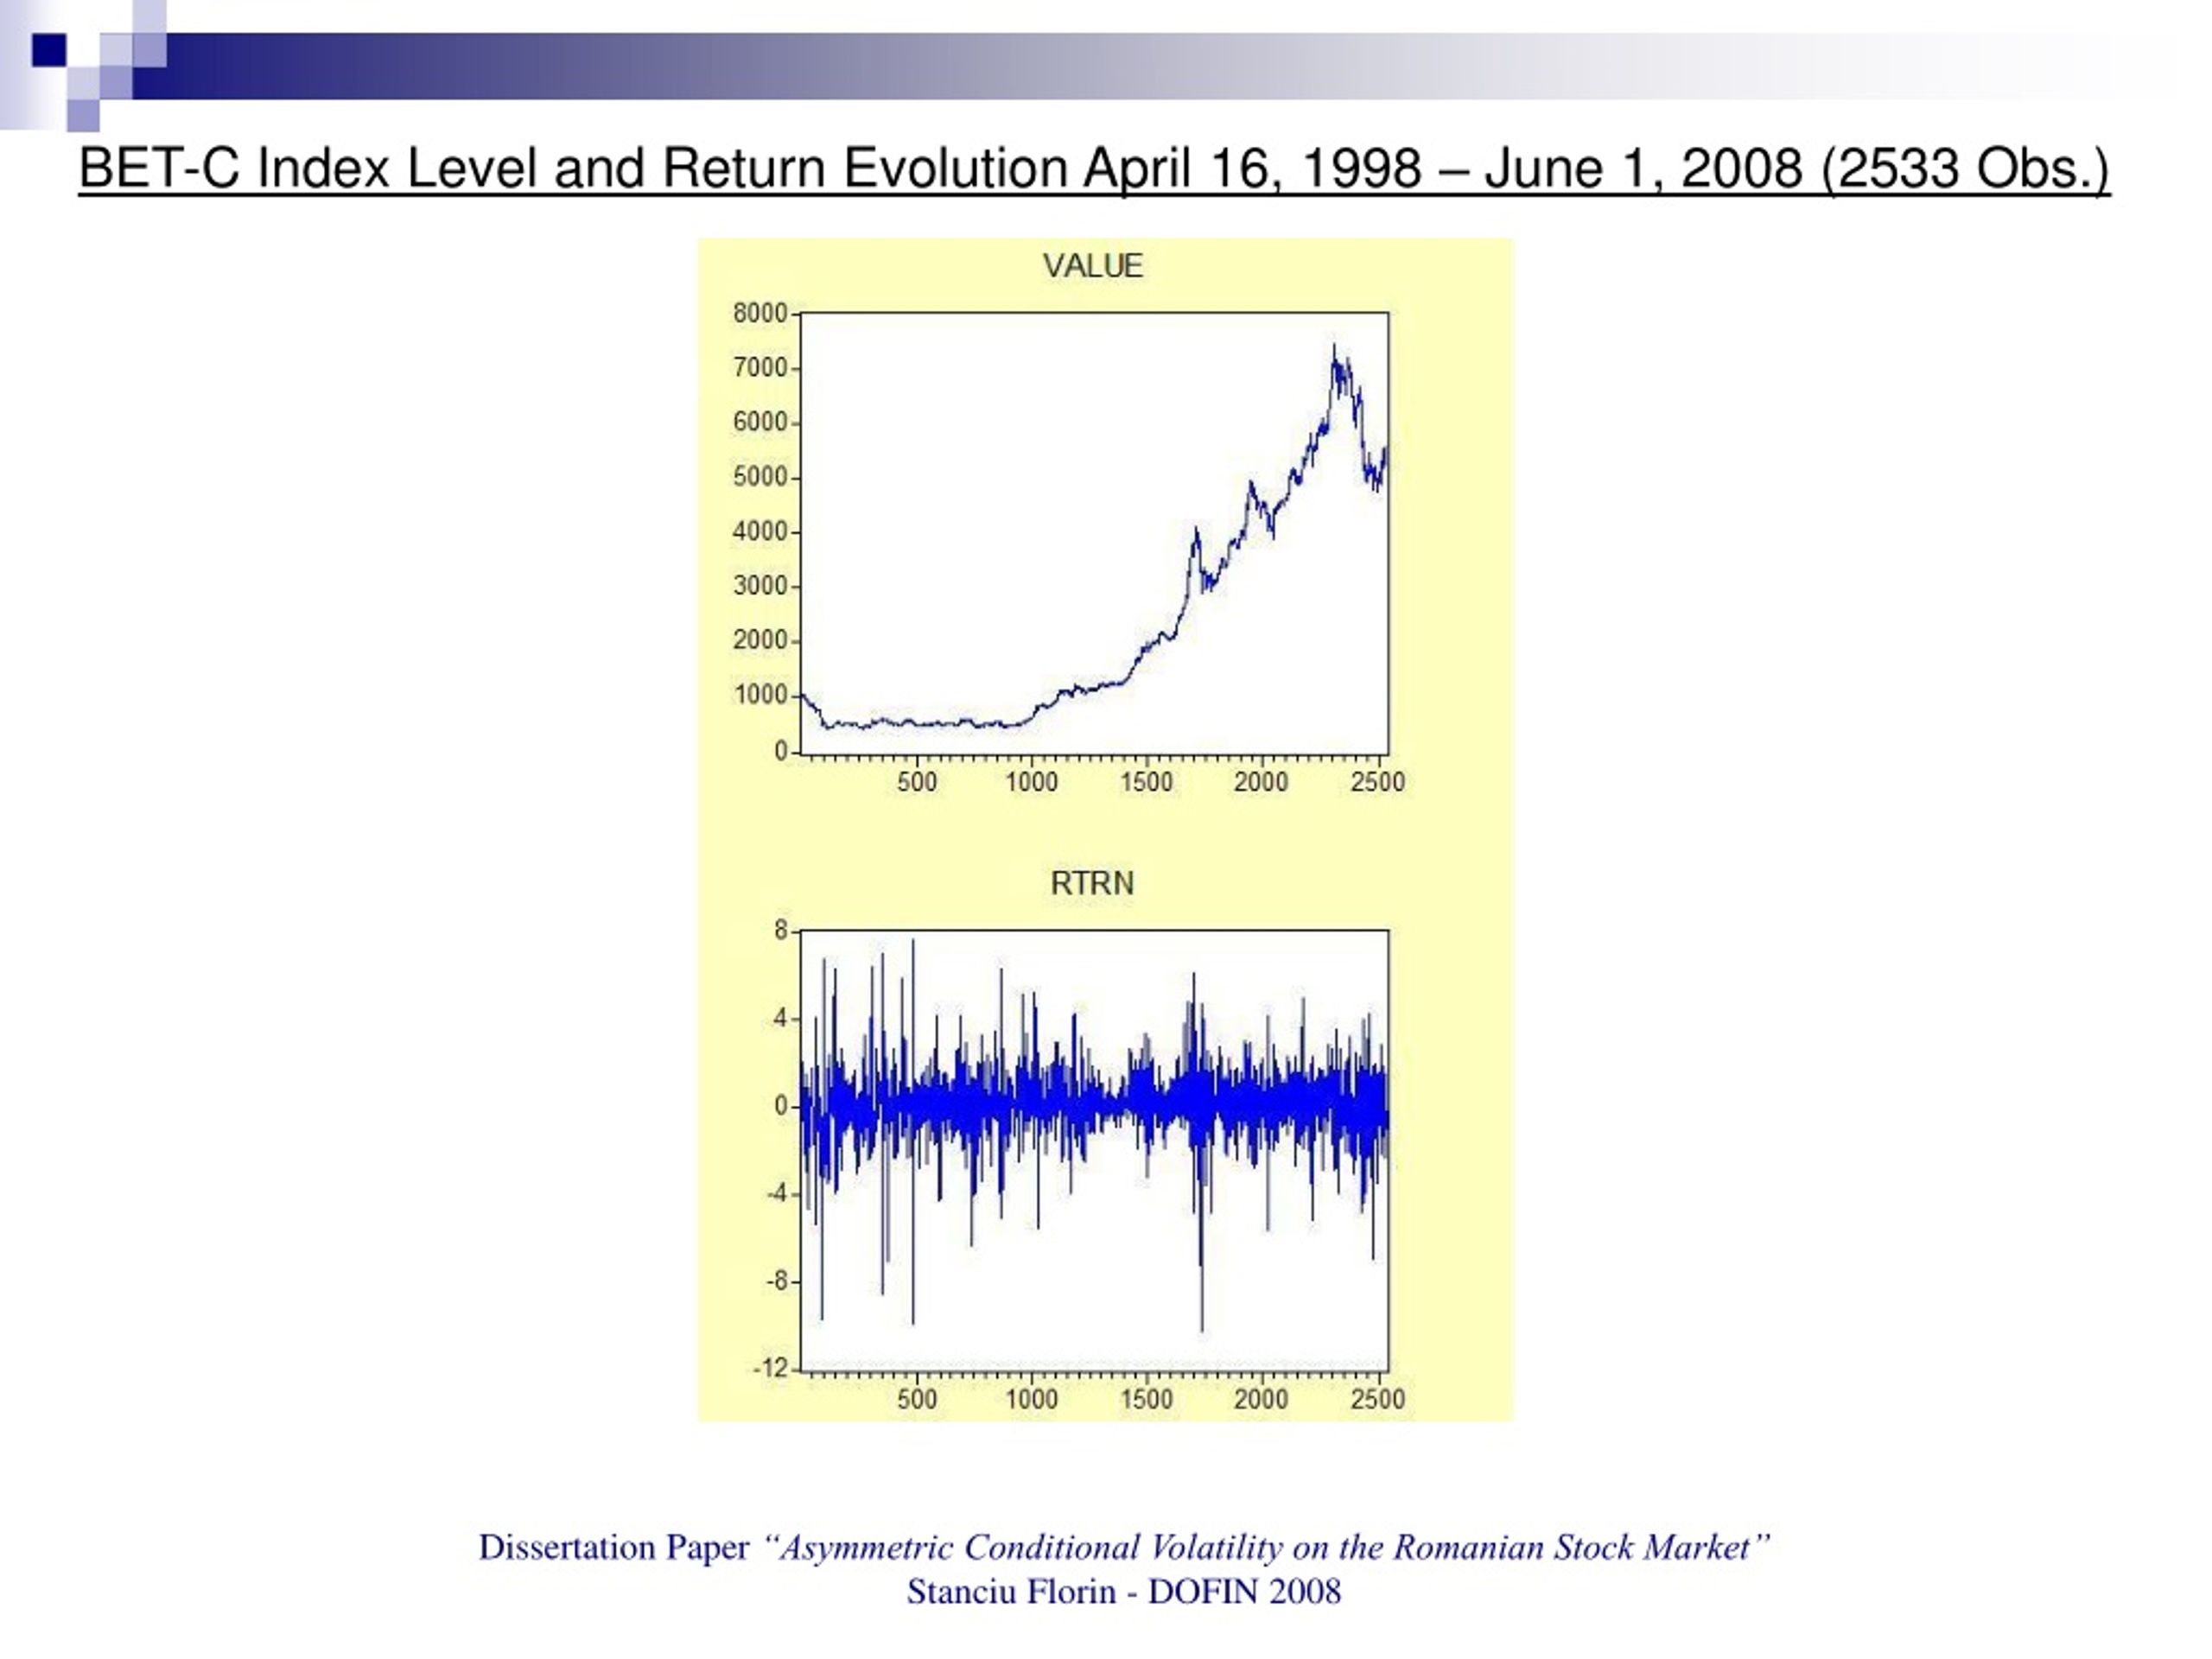 Phd thesis on stock market volatility